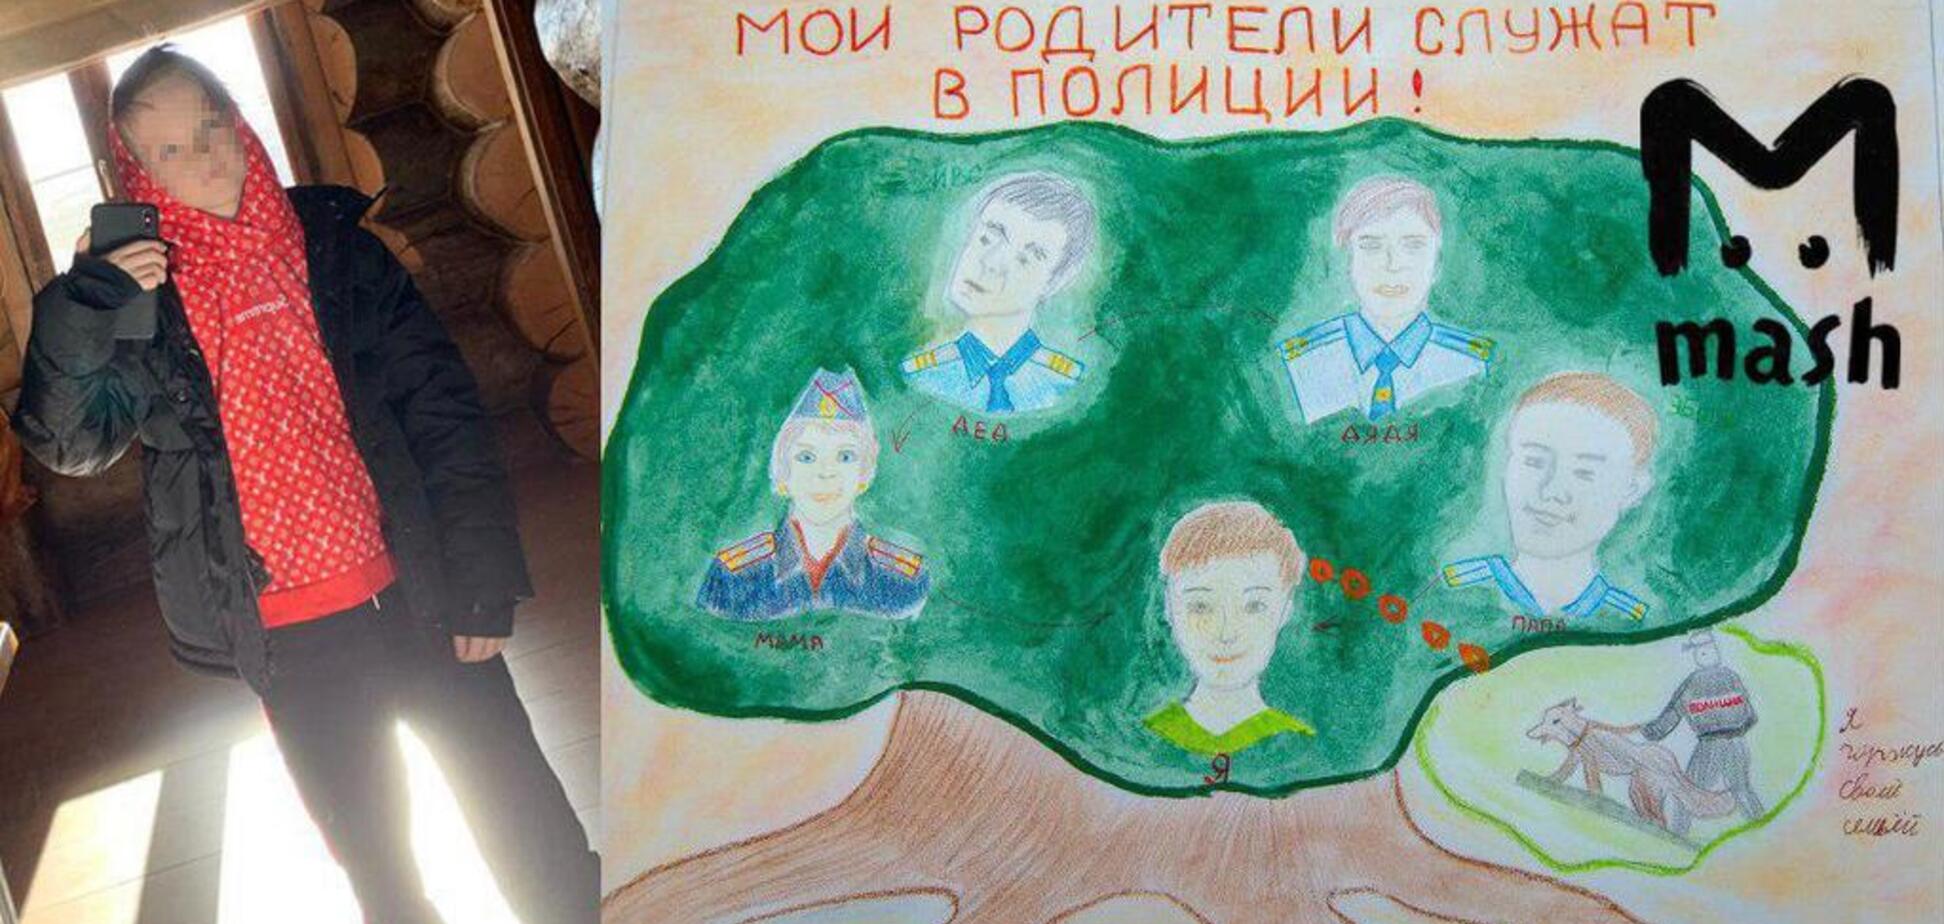 Не послушали экипаж: стало известно о чудесном спасении россиянки с сыном в 'Шереметьево'